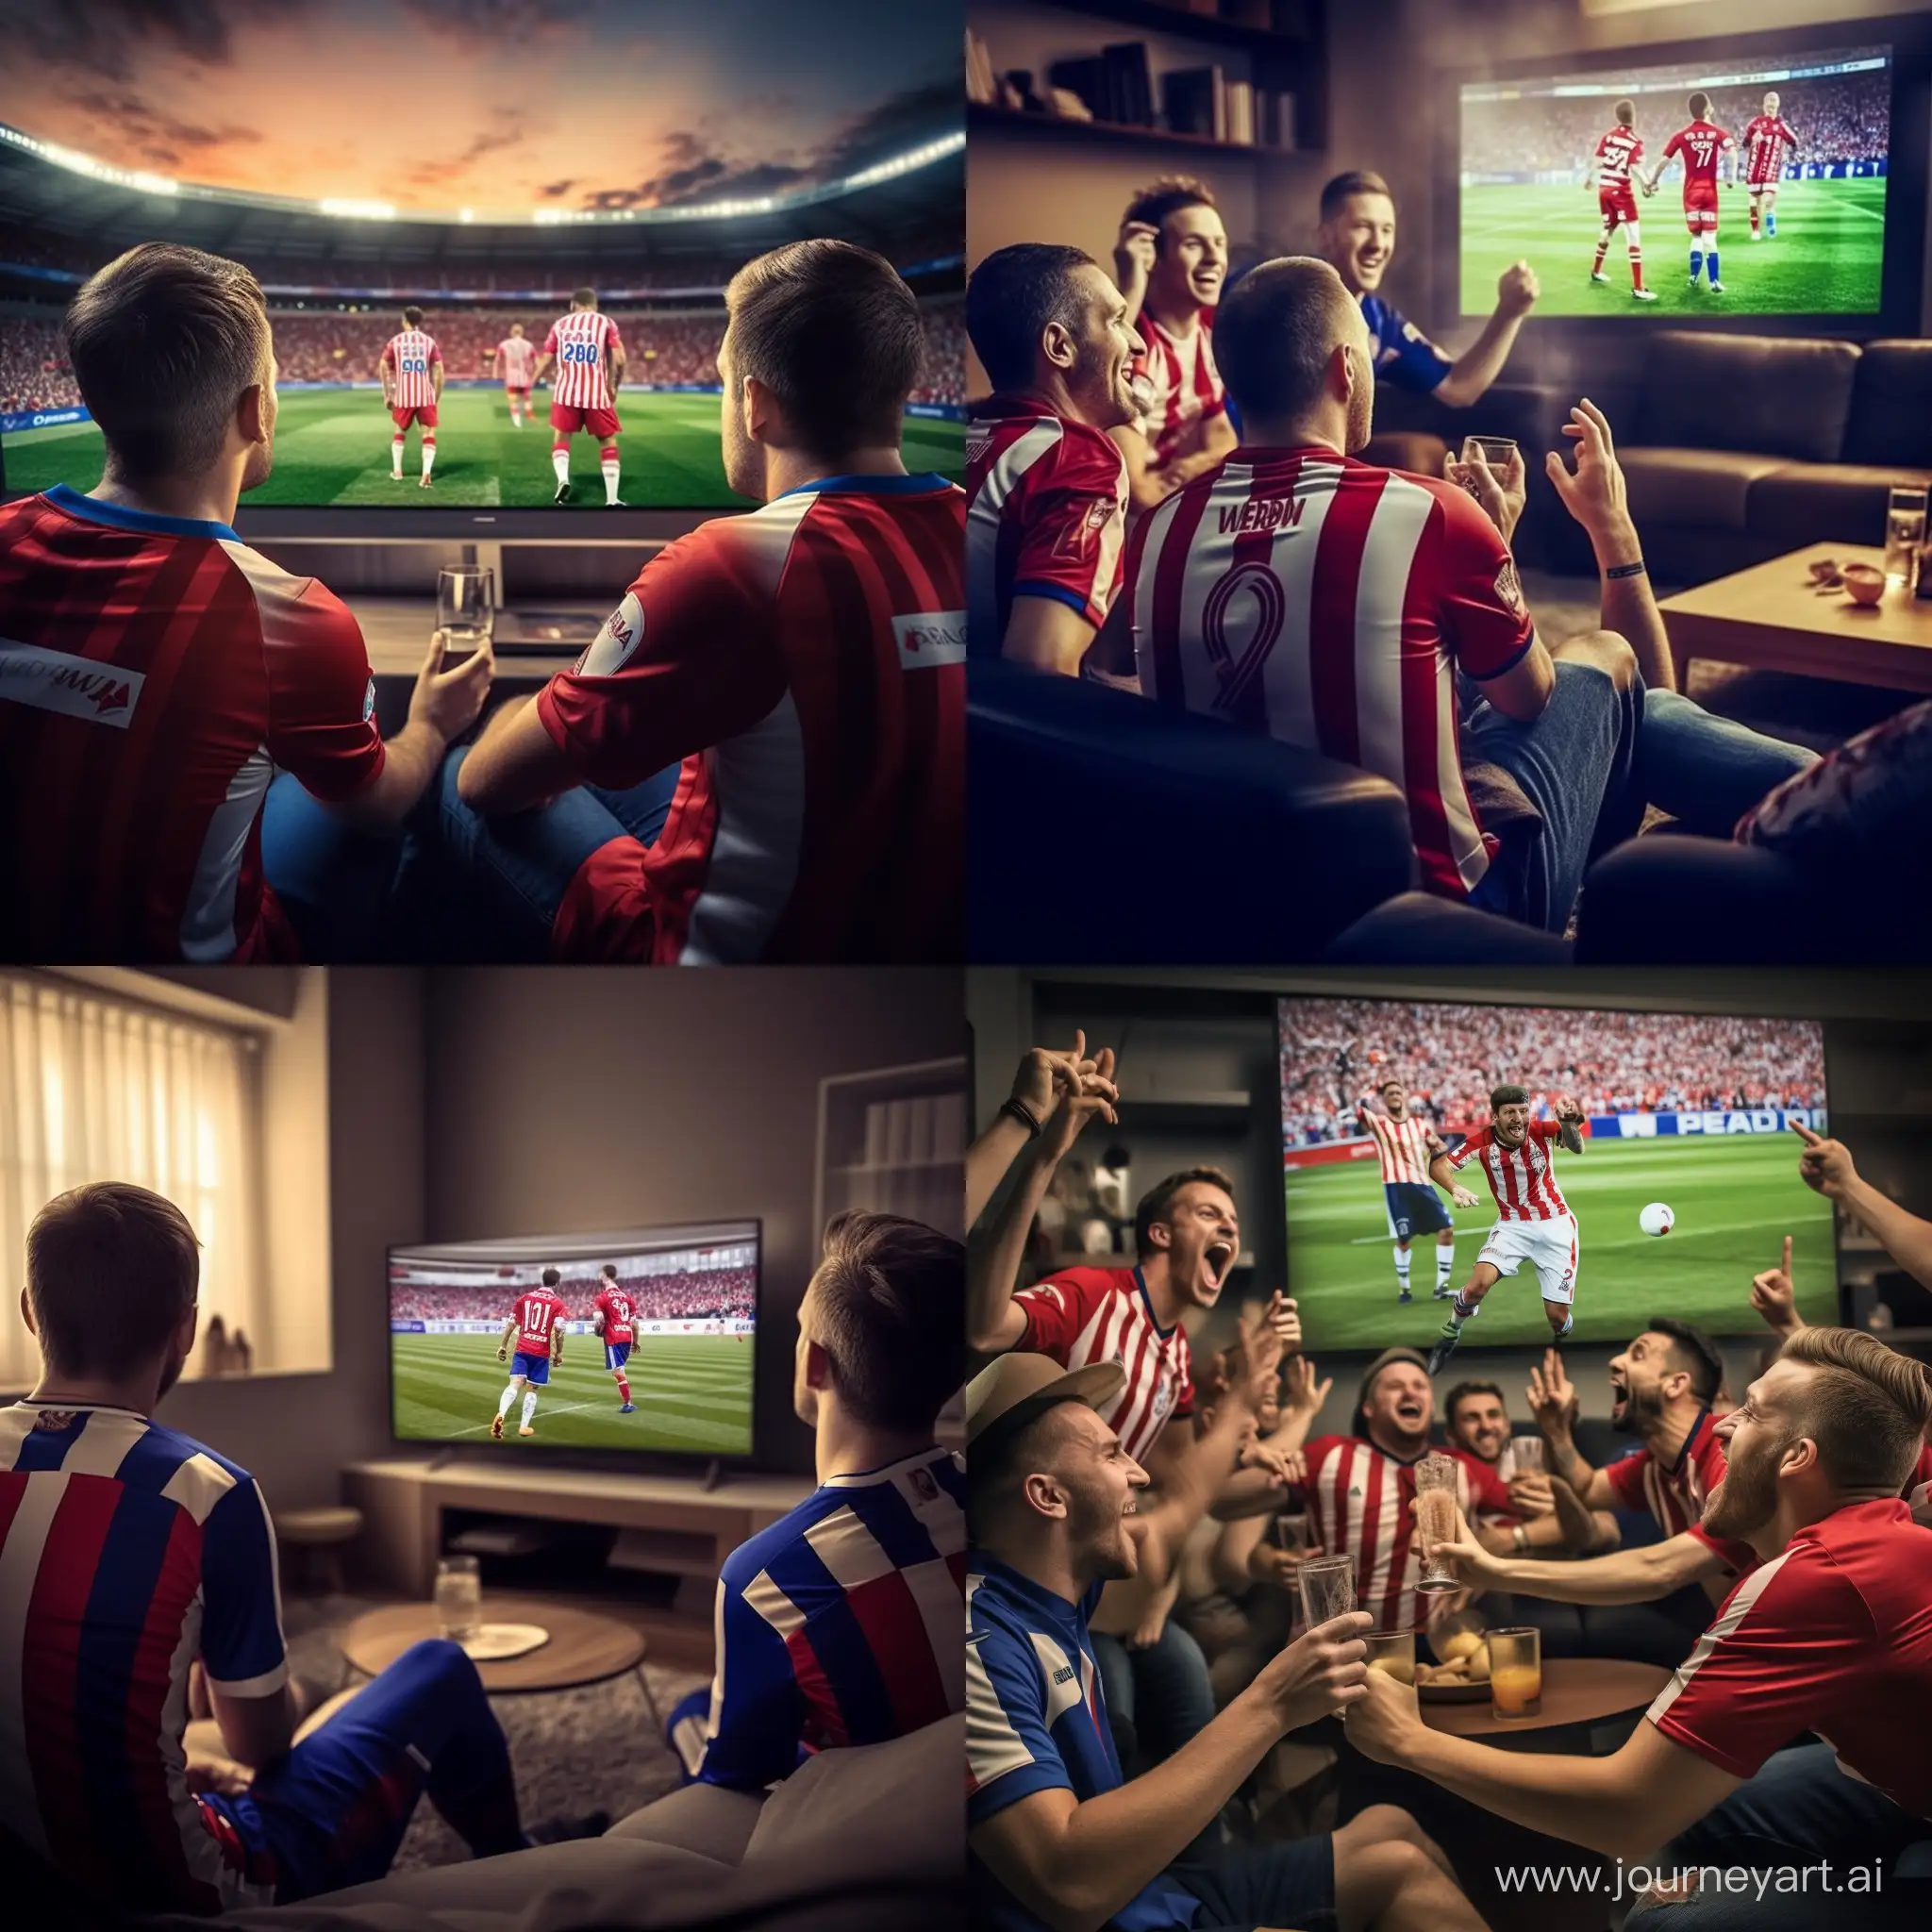 Croatian-Football-Fans-in-Team-Shirts-Watching-Intense-Match